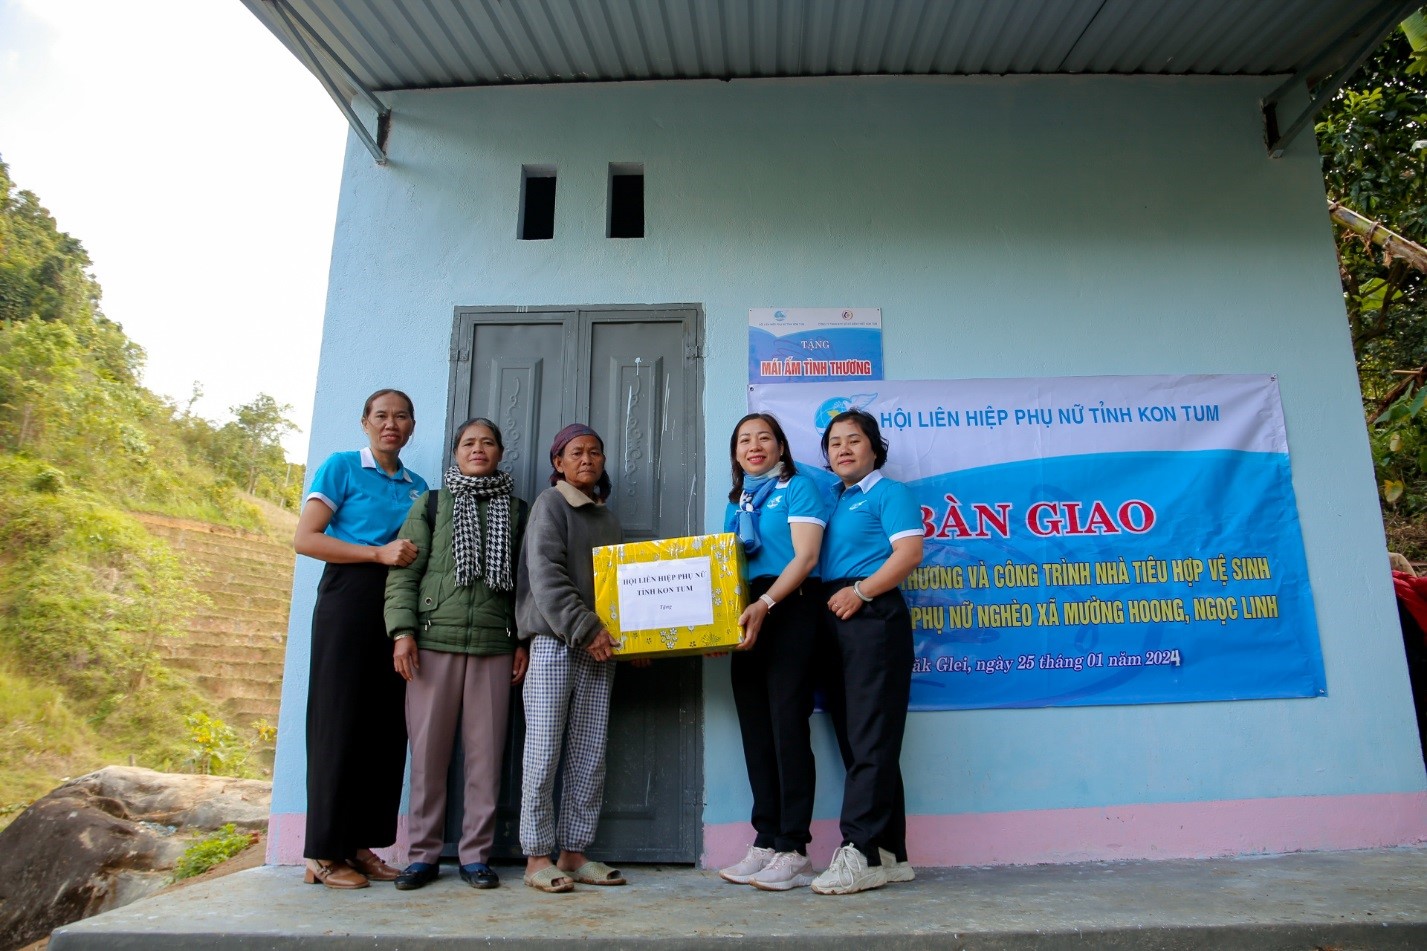 Nghiệm thu và bàn giao nhà “Mái ấm tình thương” và nhà tiêu hợp vệ sinh năm 2024 tại xã Mường Hoong và Ngọc Linh